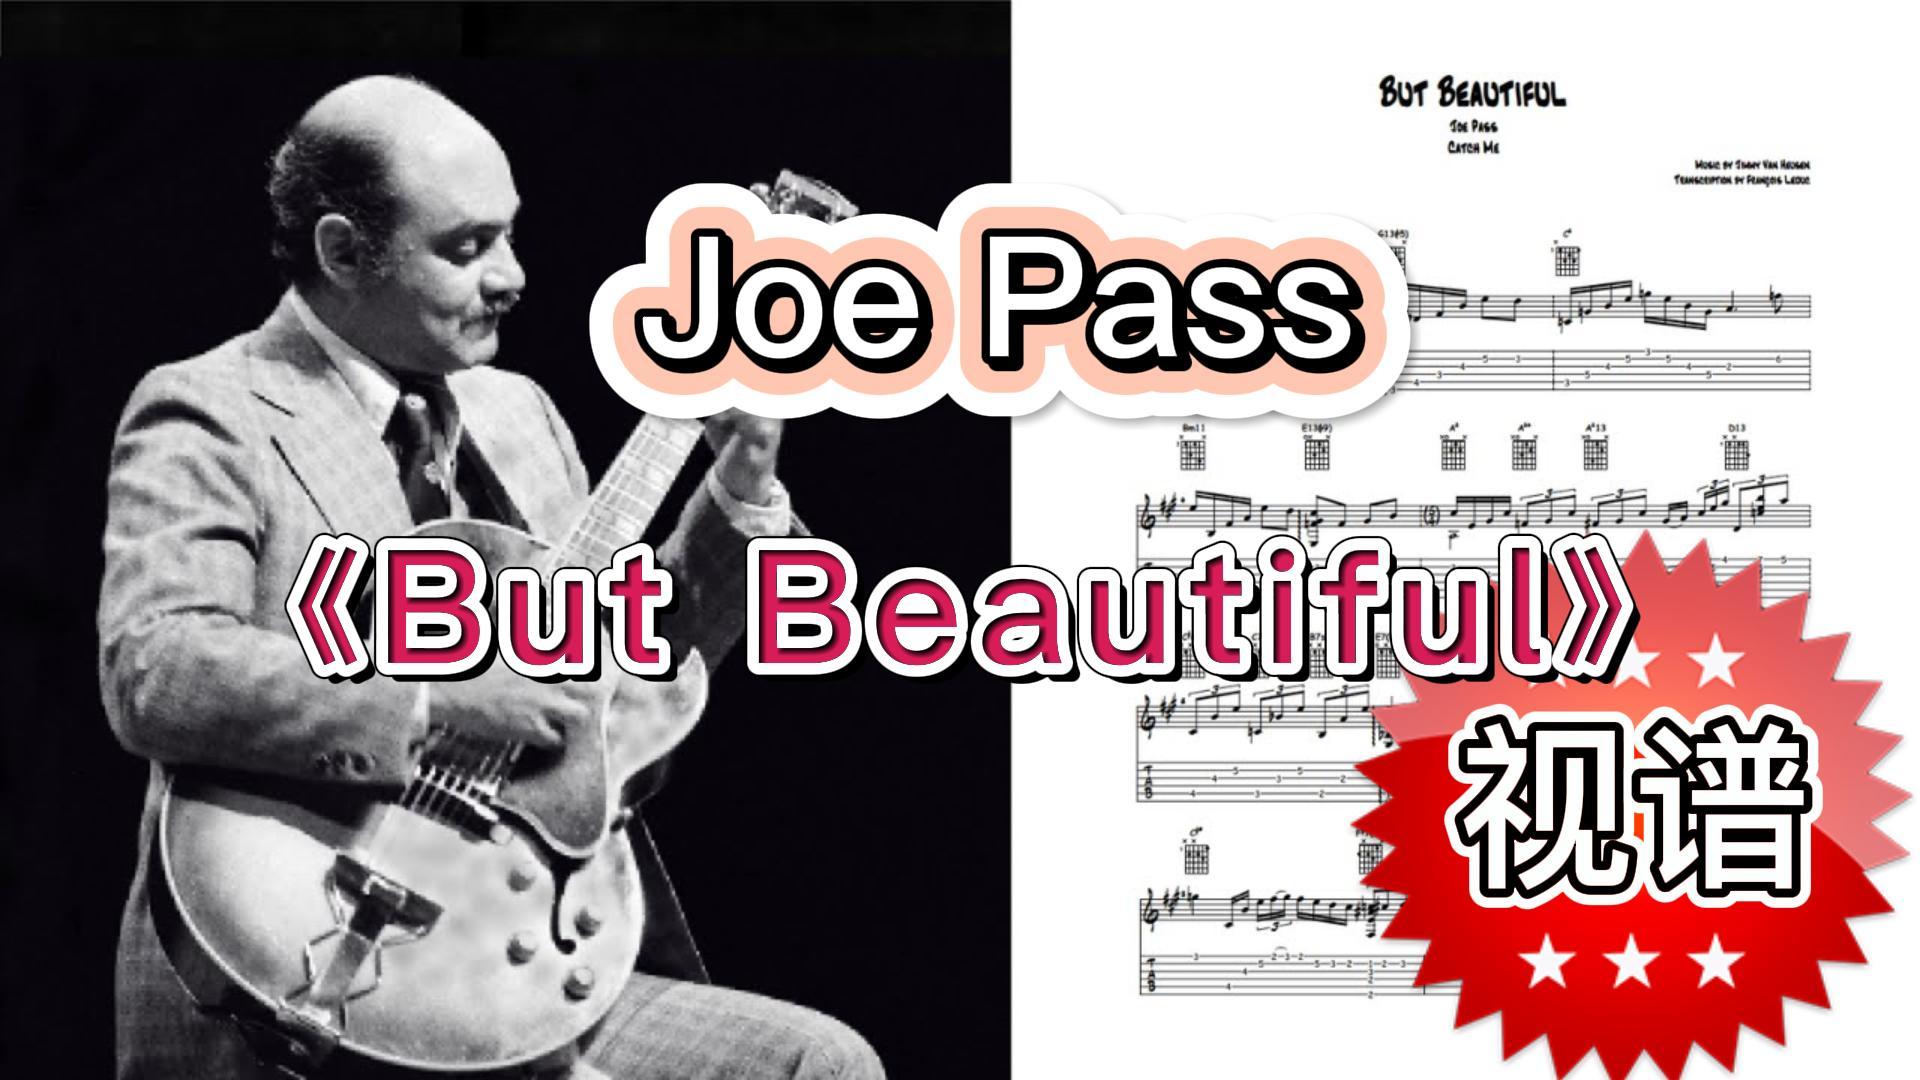 爵士吉他视频谱《But Beautiful》 Joe Pass-古桐博客